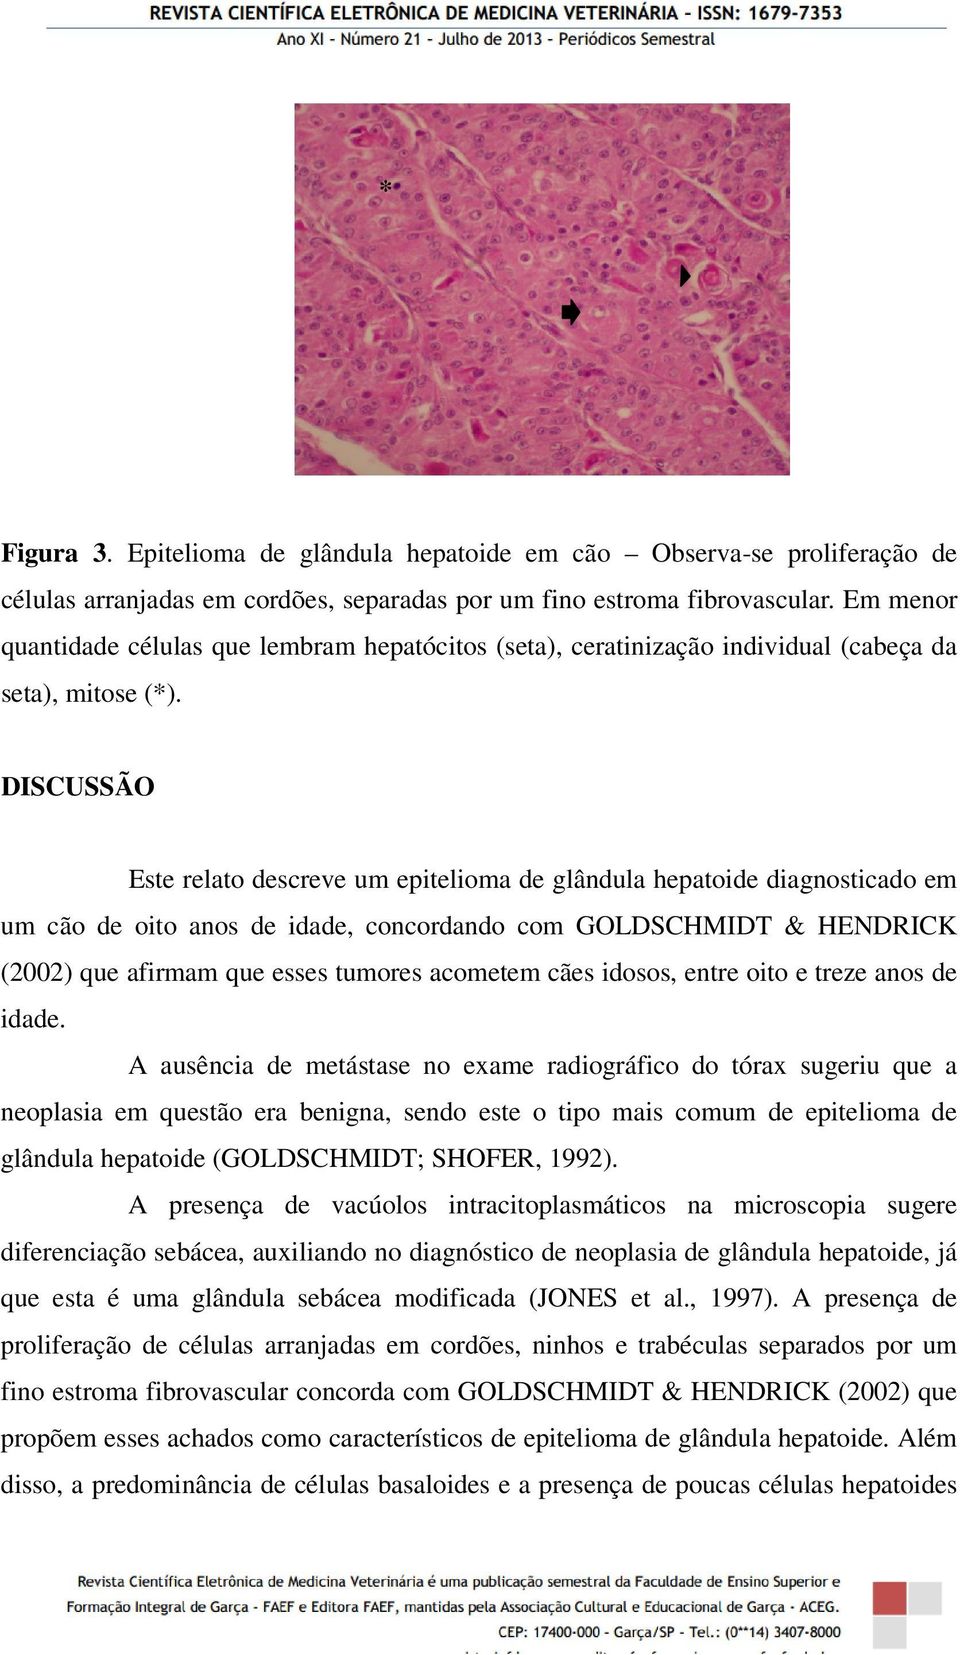 DISCUSSÃO Este relato descreve um epitelioma de glândula hepatoide diagnosticado em um cão de oito anos de idade, concordando com GOLDSCHMIDT & HENDRICK (2002) que afirmam que esses tumores acometem